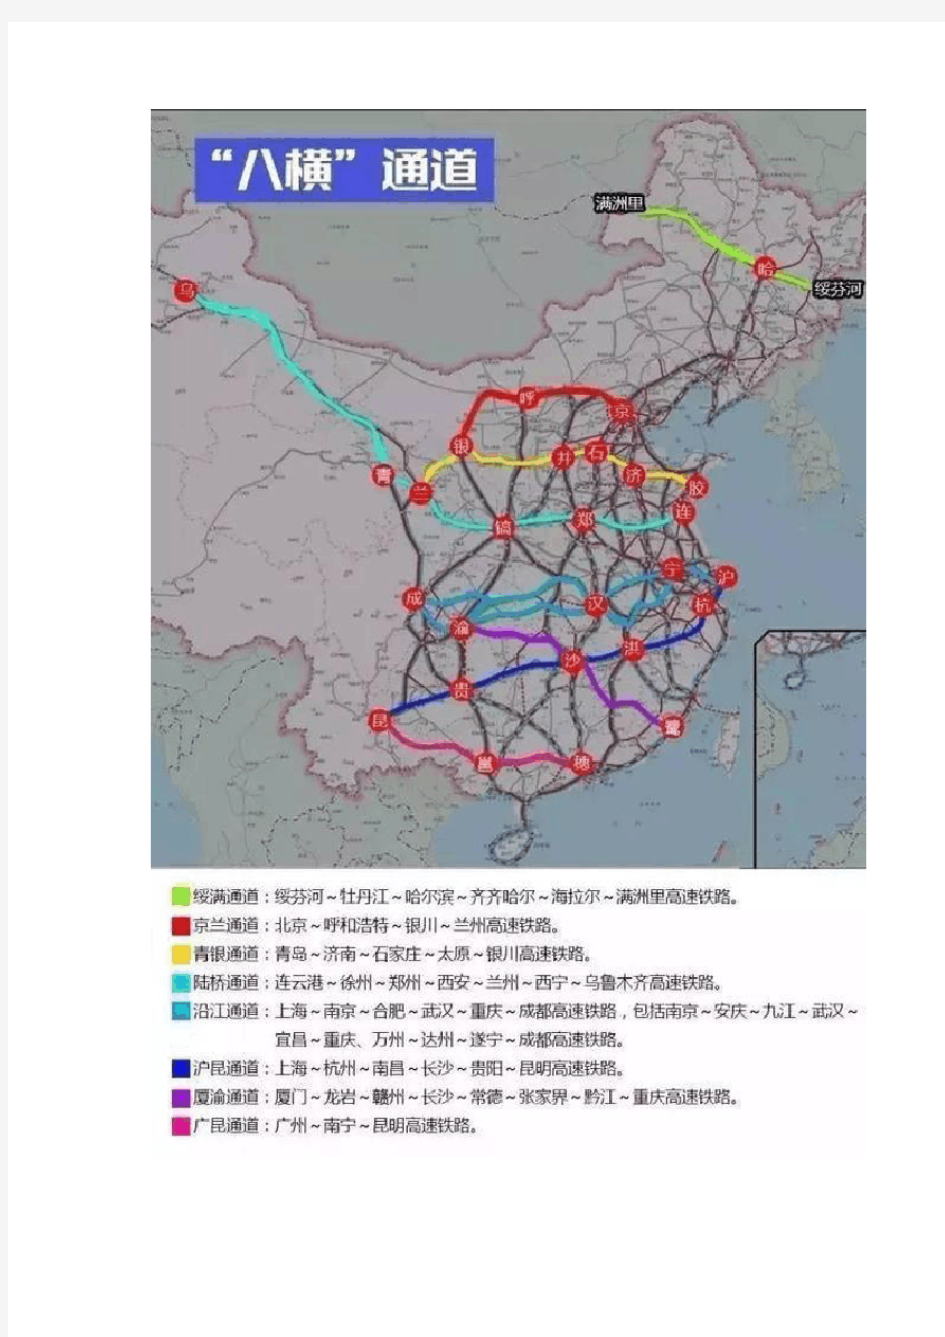 “八纵八横”高铁新战略,改变中国城市的力量格局